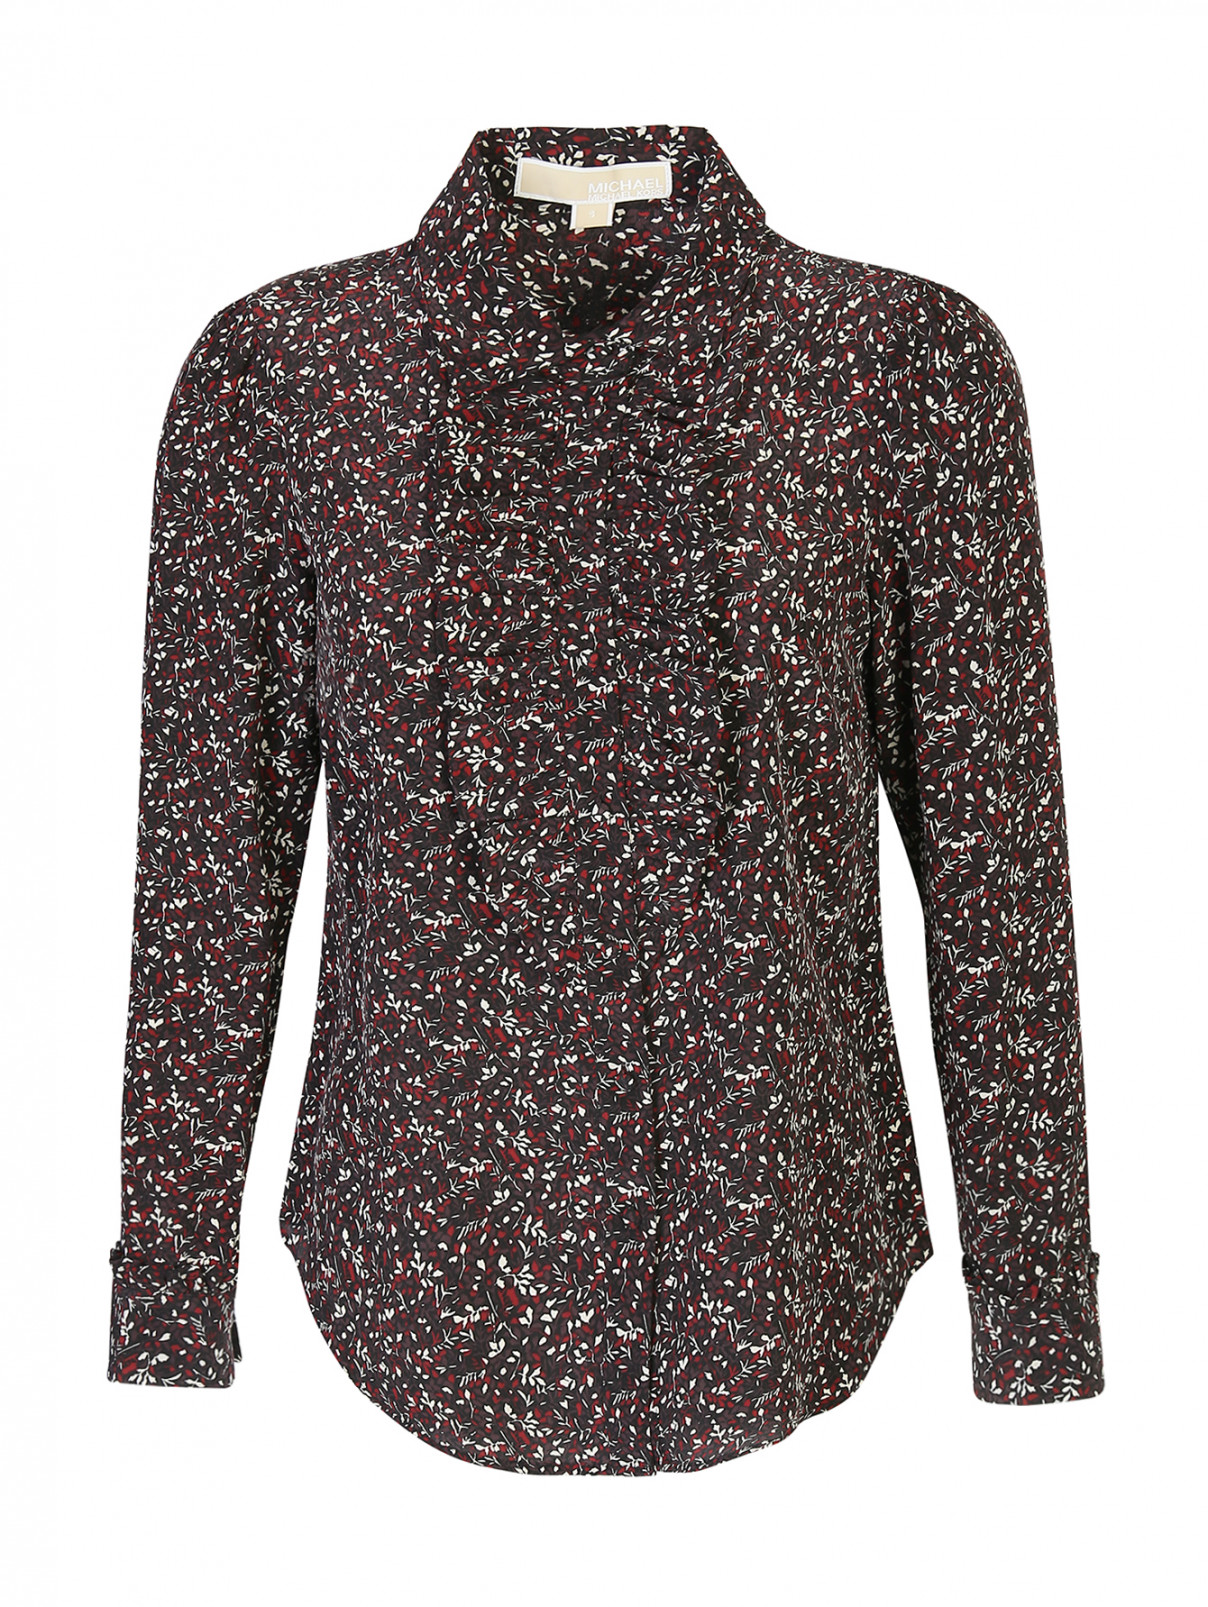 Блуза шелковая, с цветочным узором Michael by Michael Kors  –  Общий вид  – Цвет:  Красный